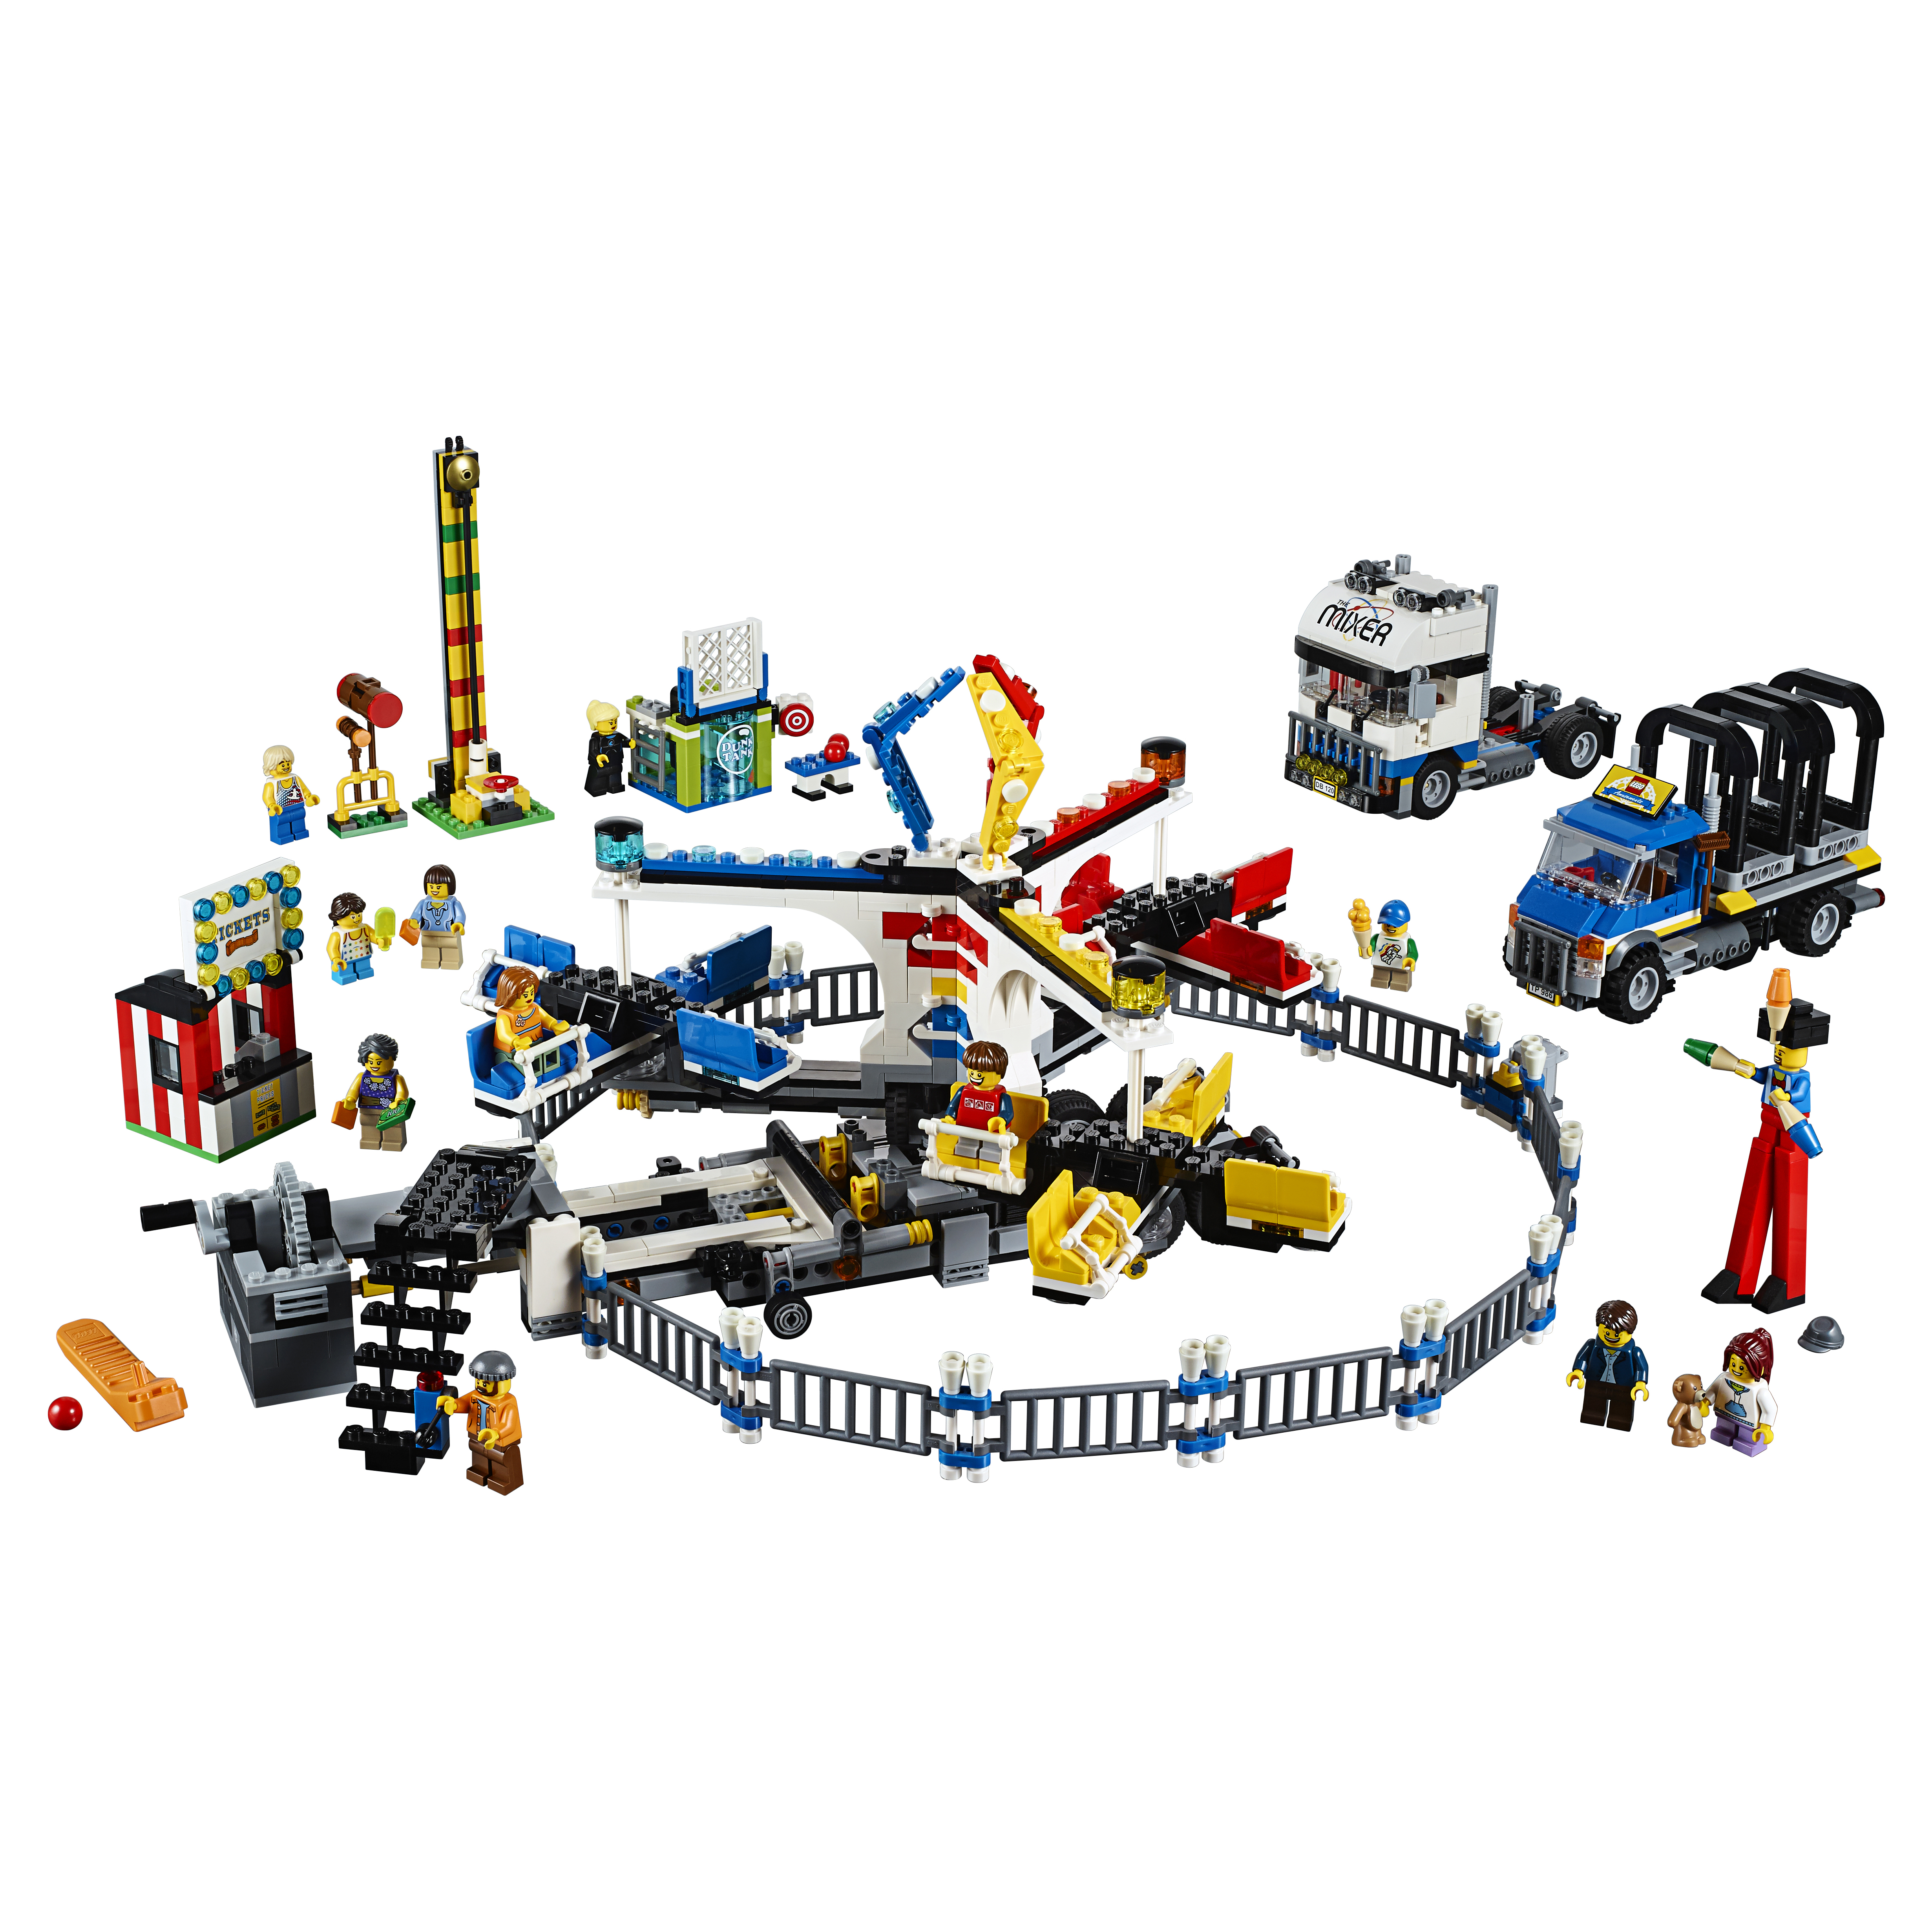 Купить Конструктор lego creator expert ярмарка 10244, Конструктор LEGO Creator Expert Ярмарка (10244),